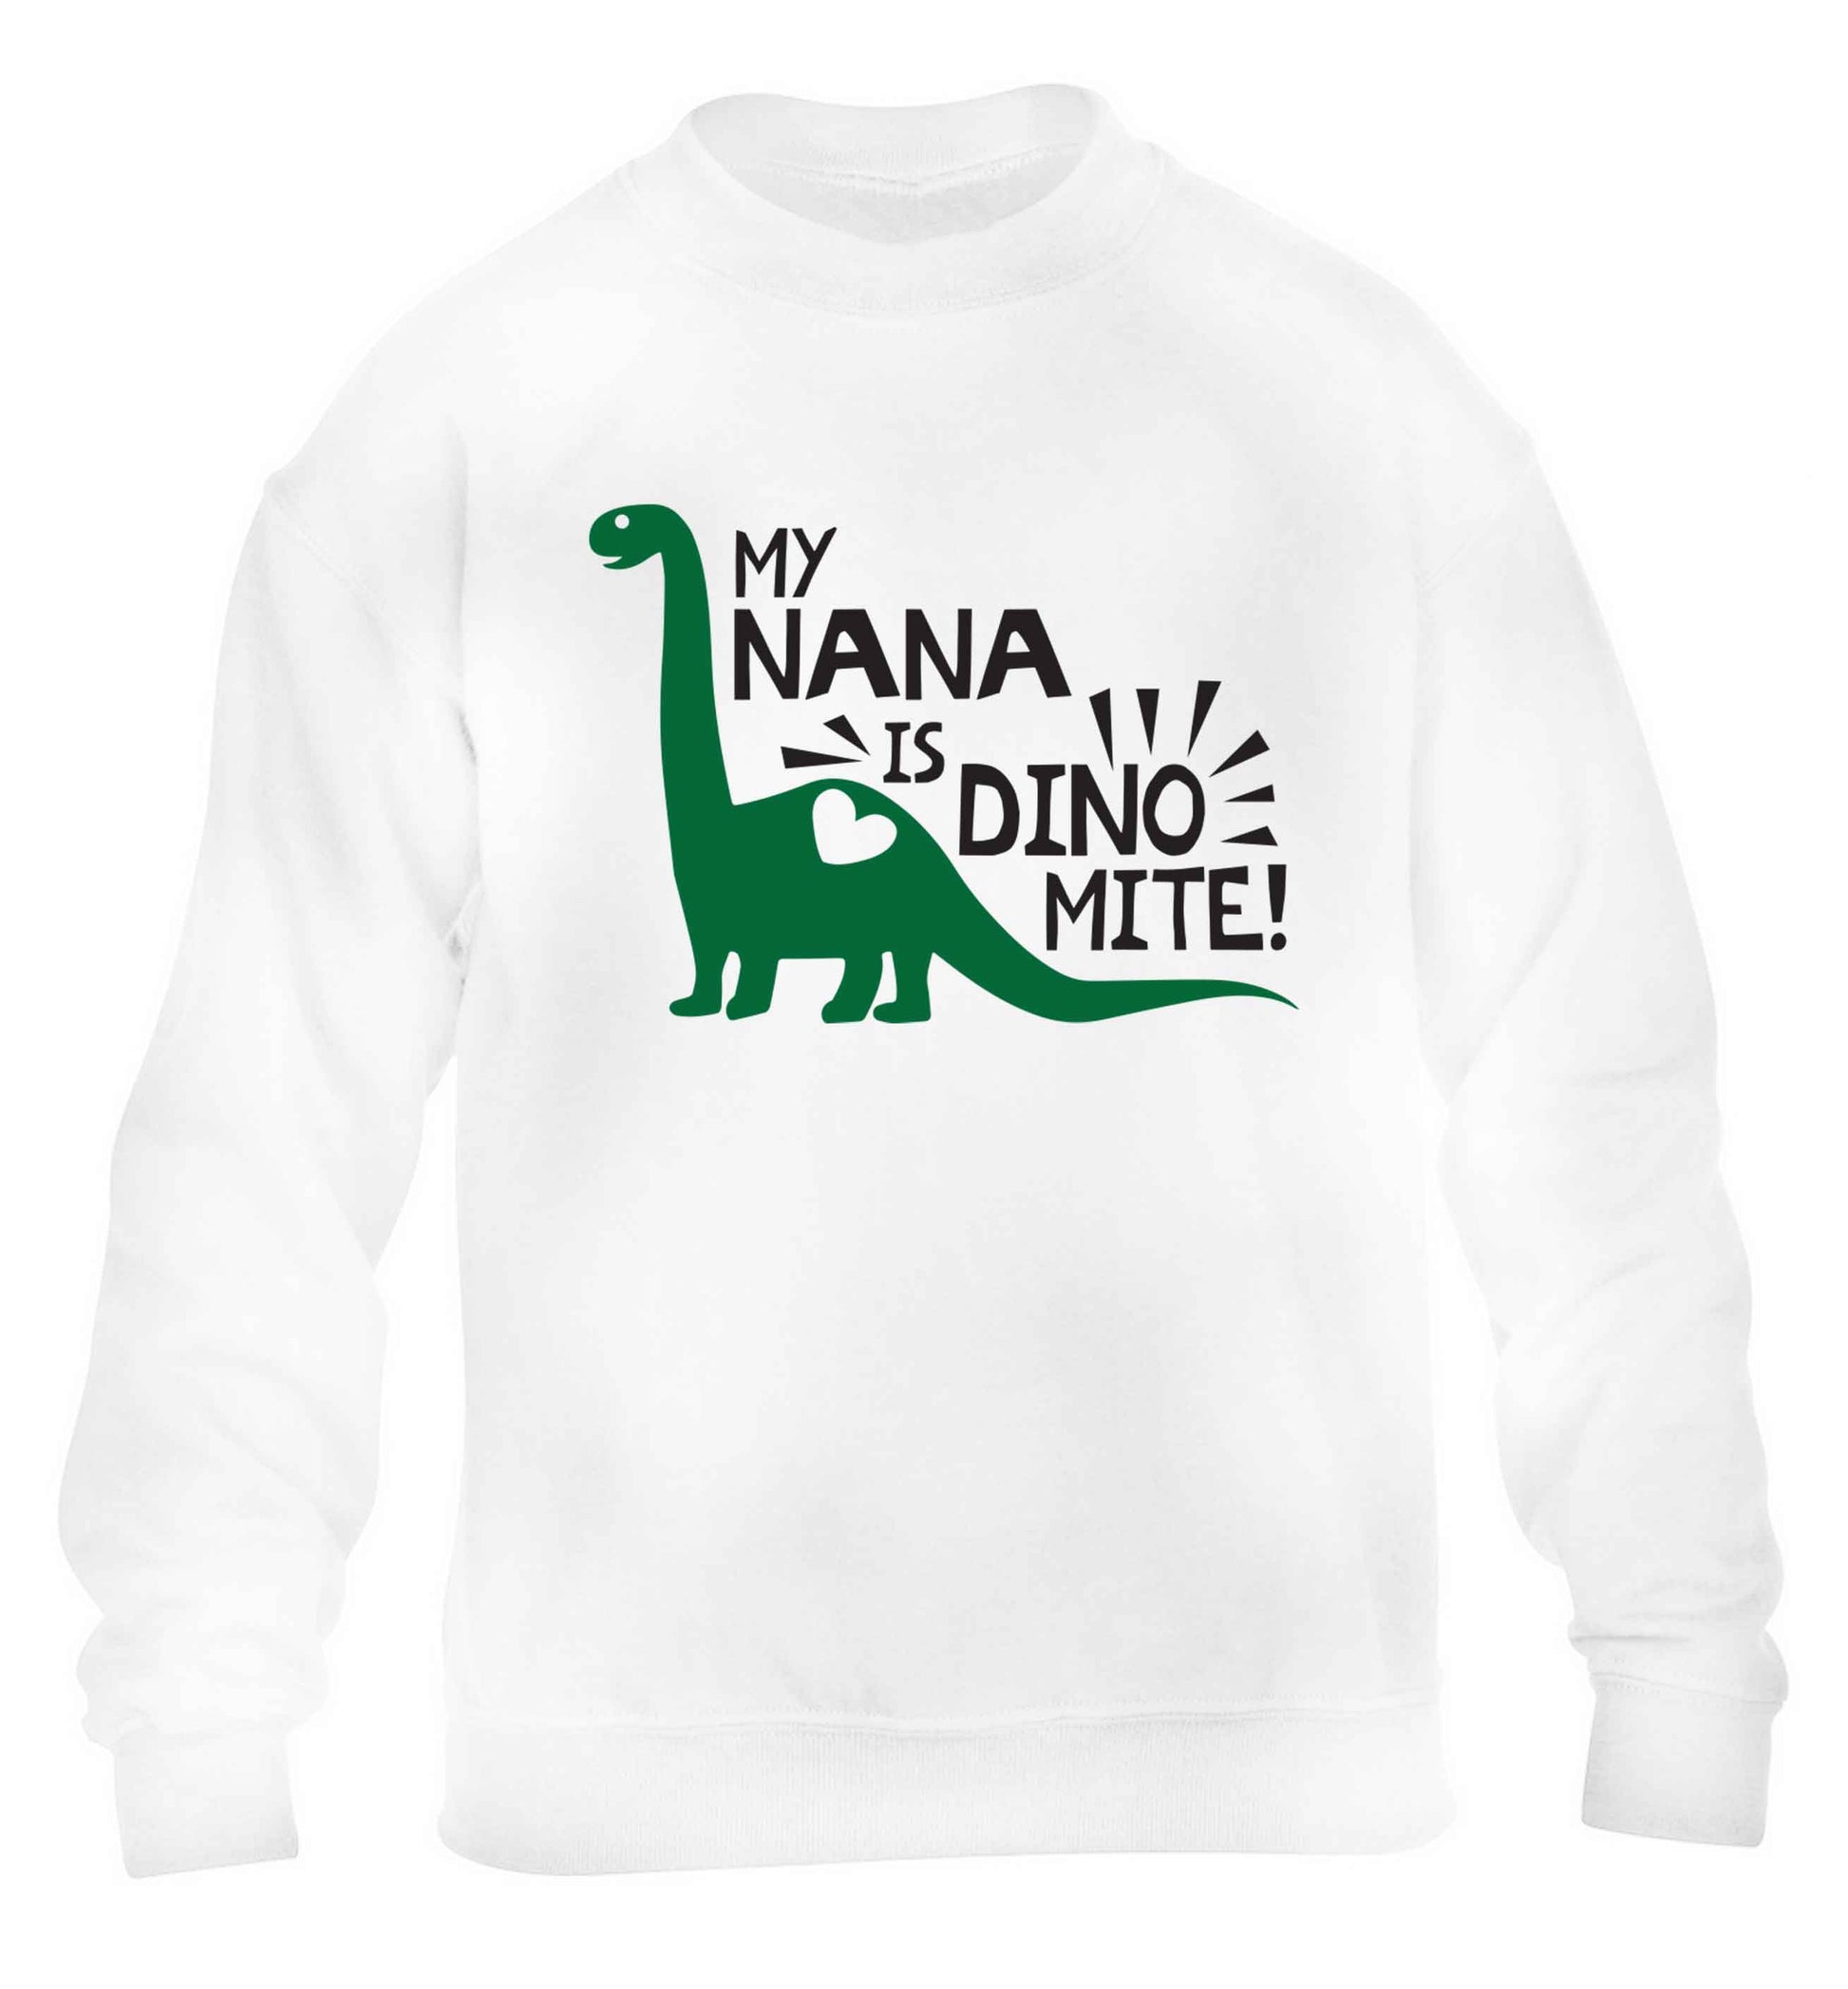 My nana is dinomite! children's white sweater 12-13 Years